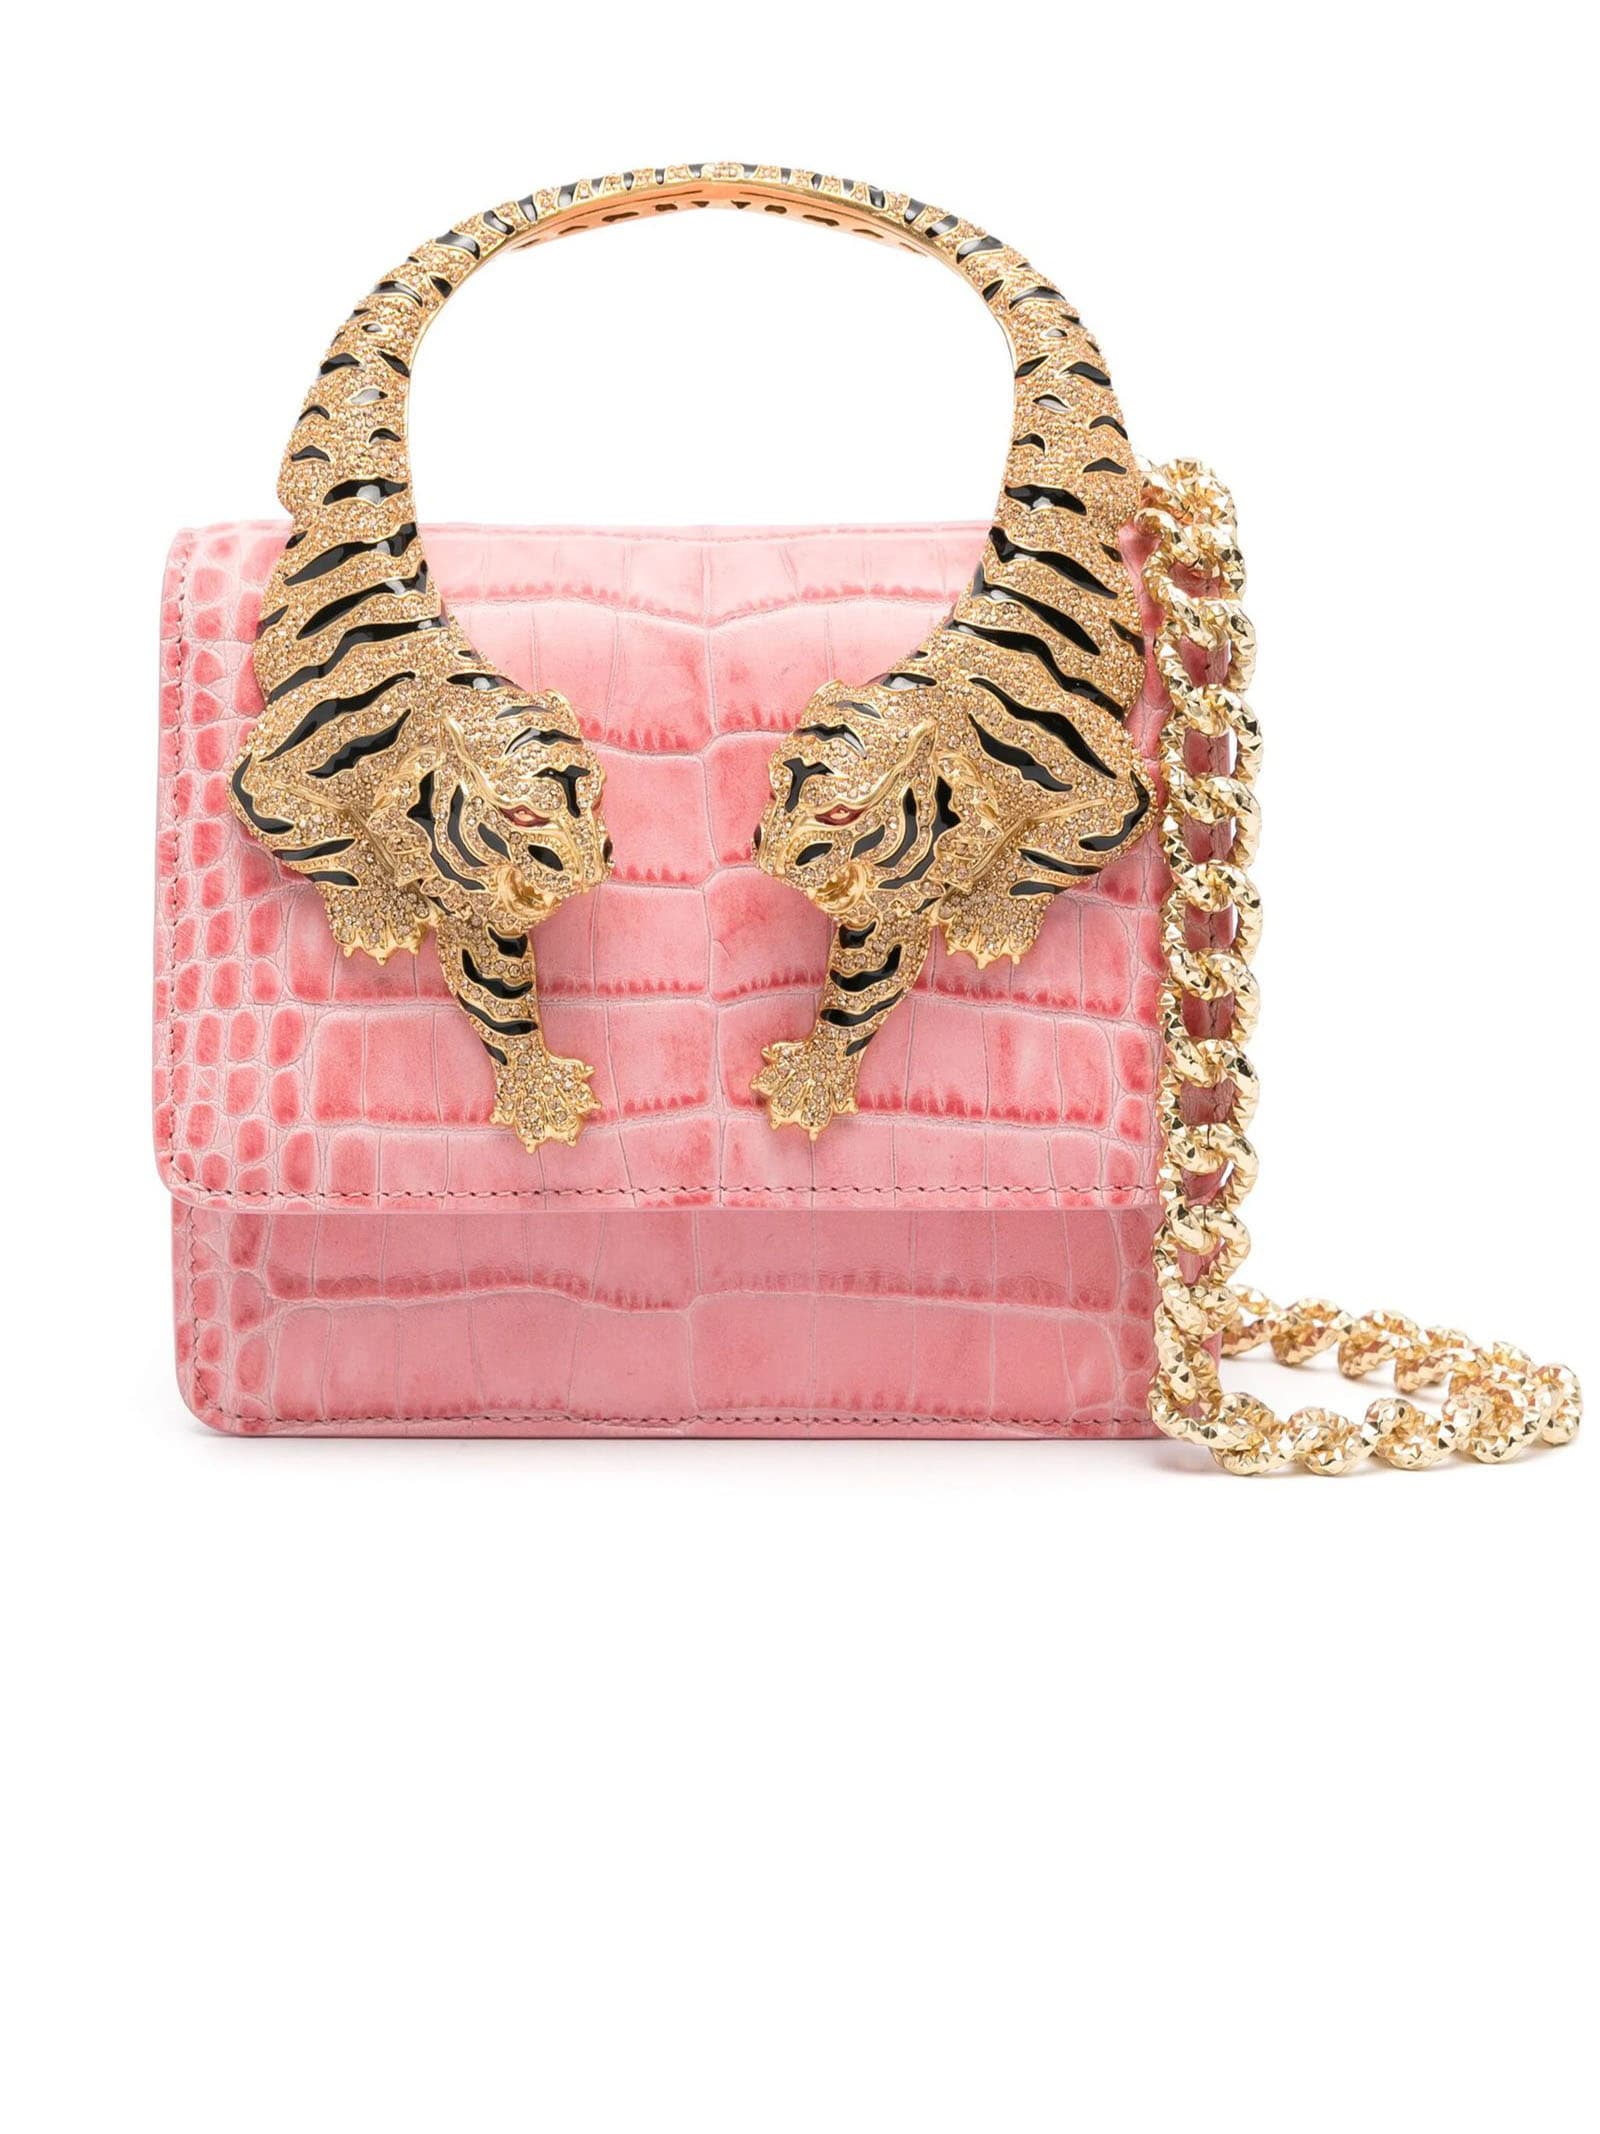 Roberto Cavalli Rose Pink Roar Tote Bag